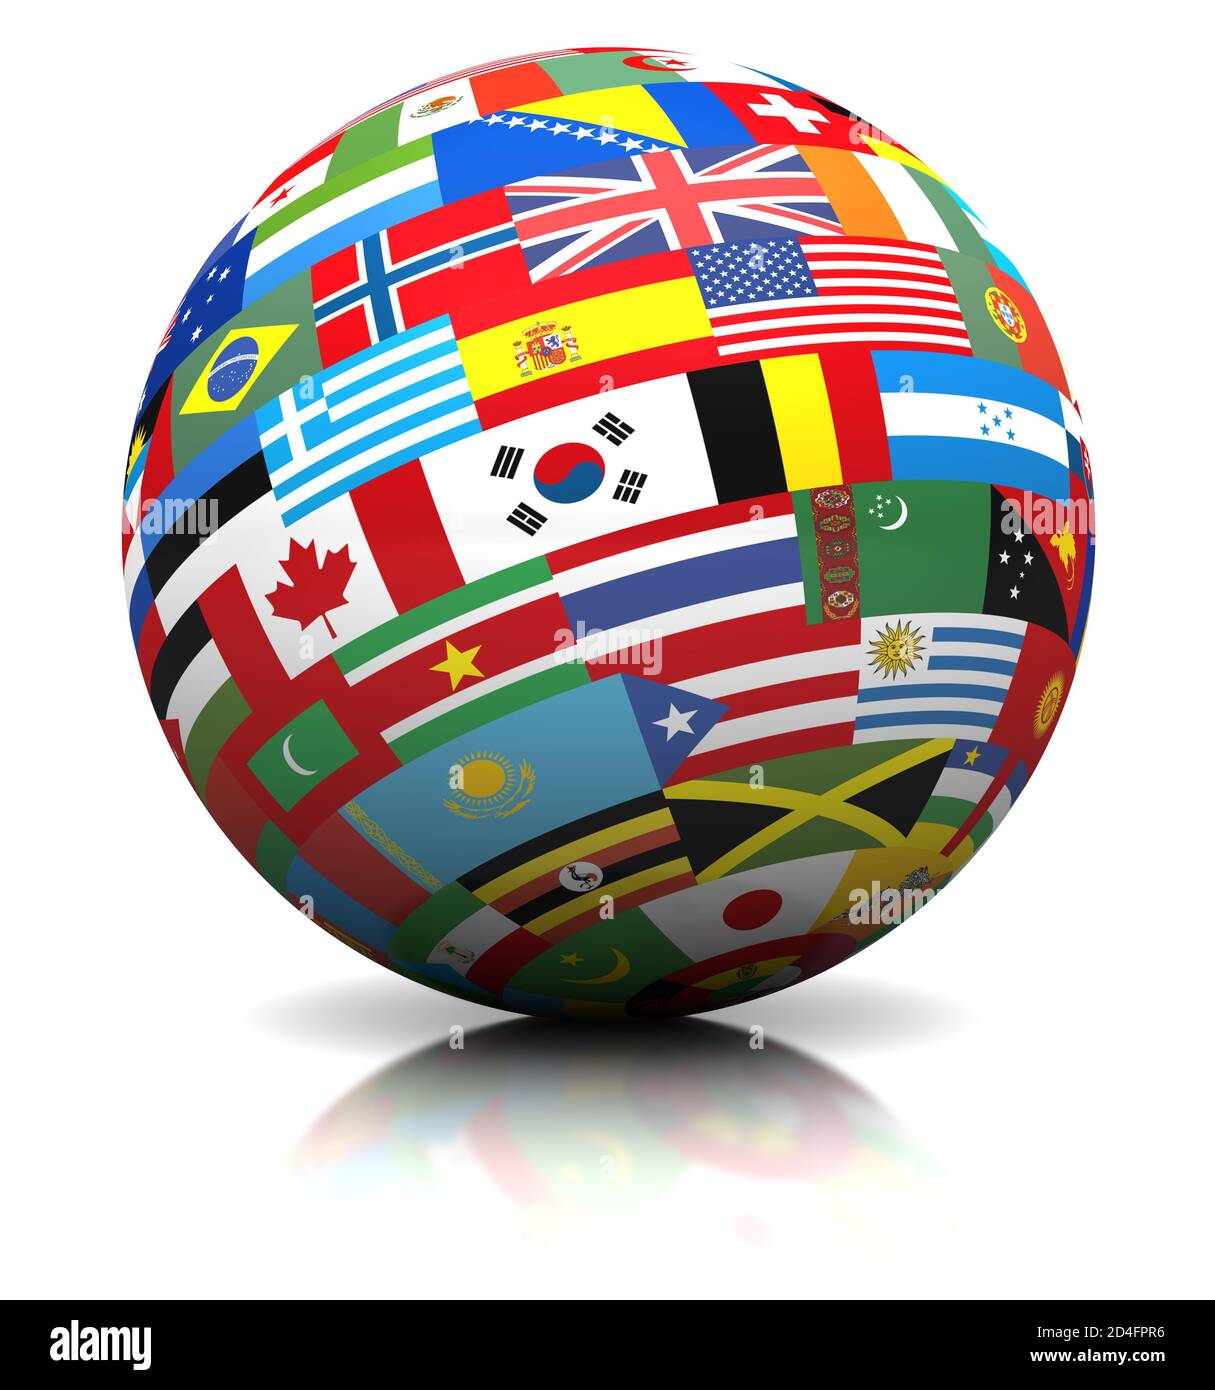 Globo de banderas del mundo, símbolos internacionales de países de todo el mundo, fondo blanco, cortado Foto de stock